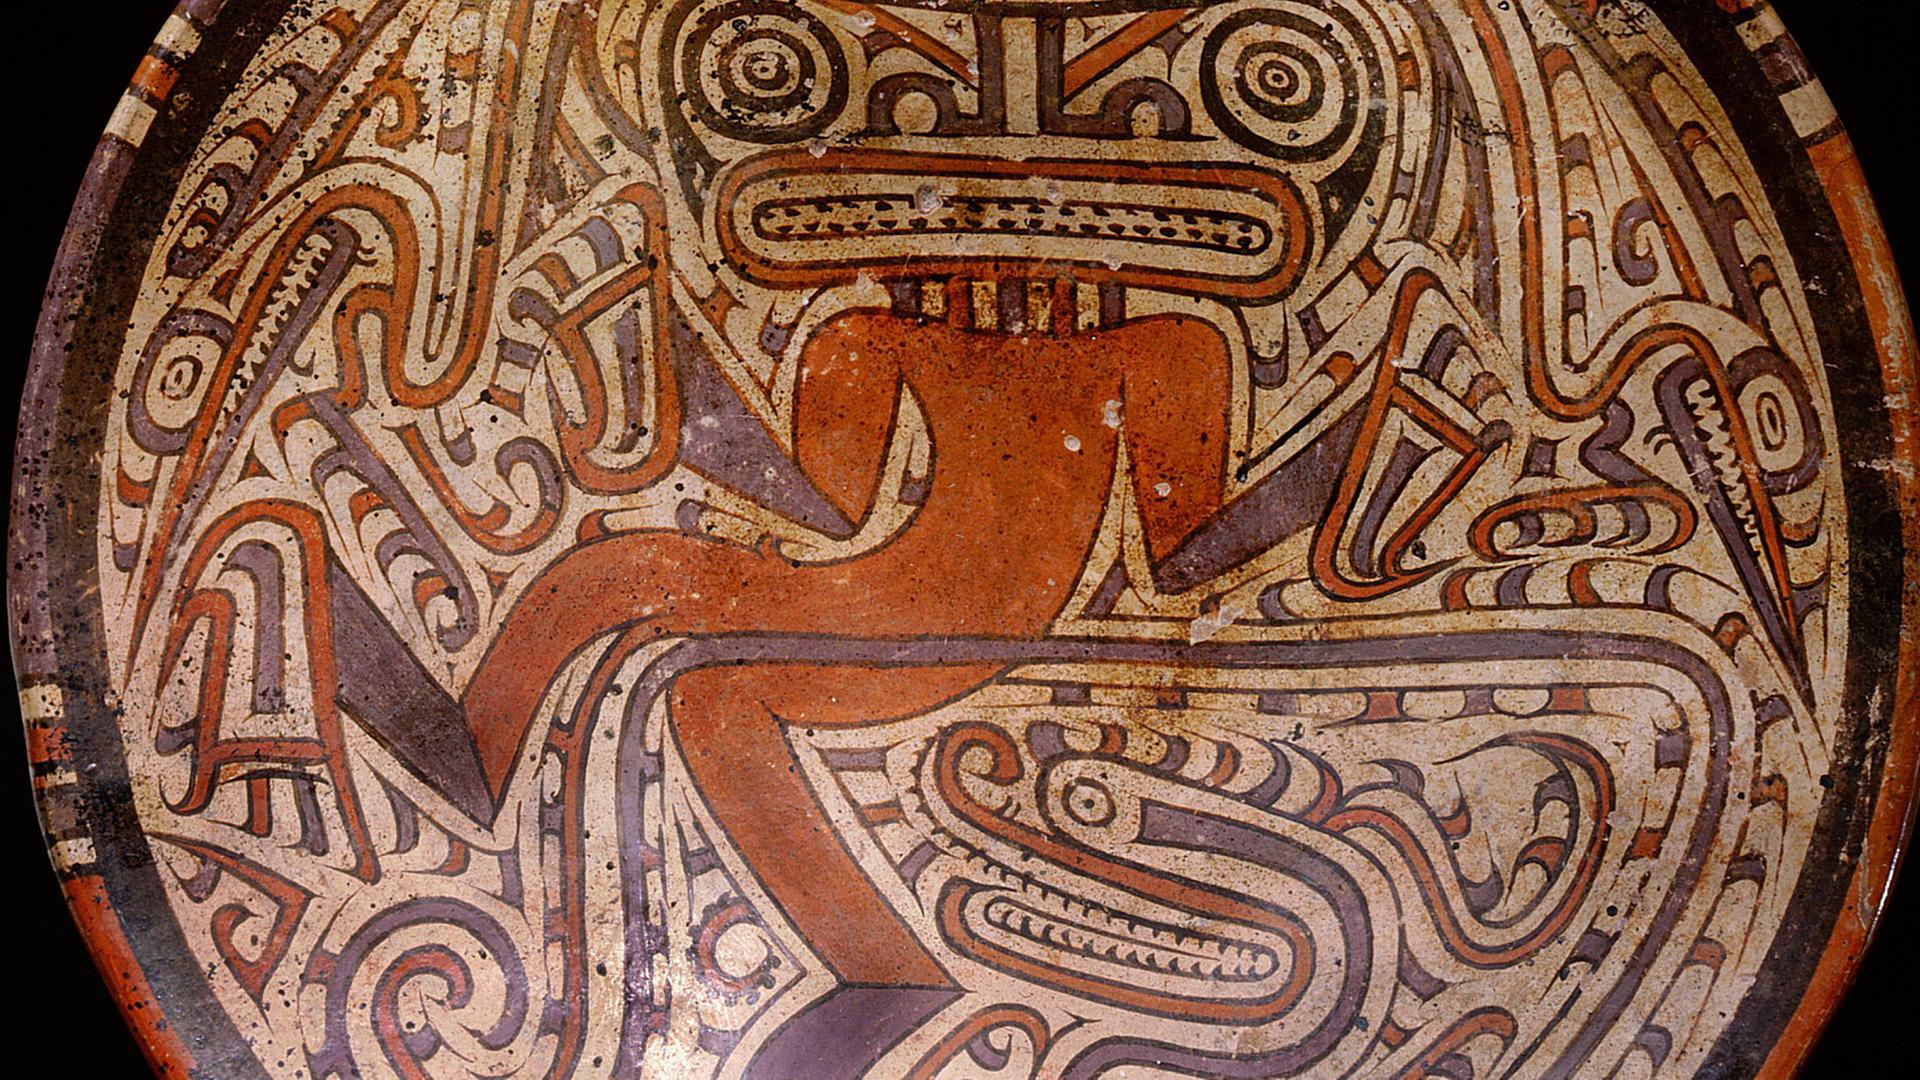 Eine südamerikanische Trommel, wo eine Schlange und ein Schamane abgebildet sind.